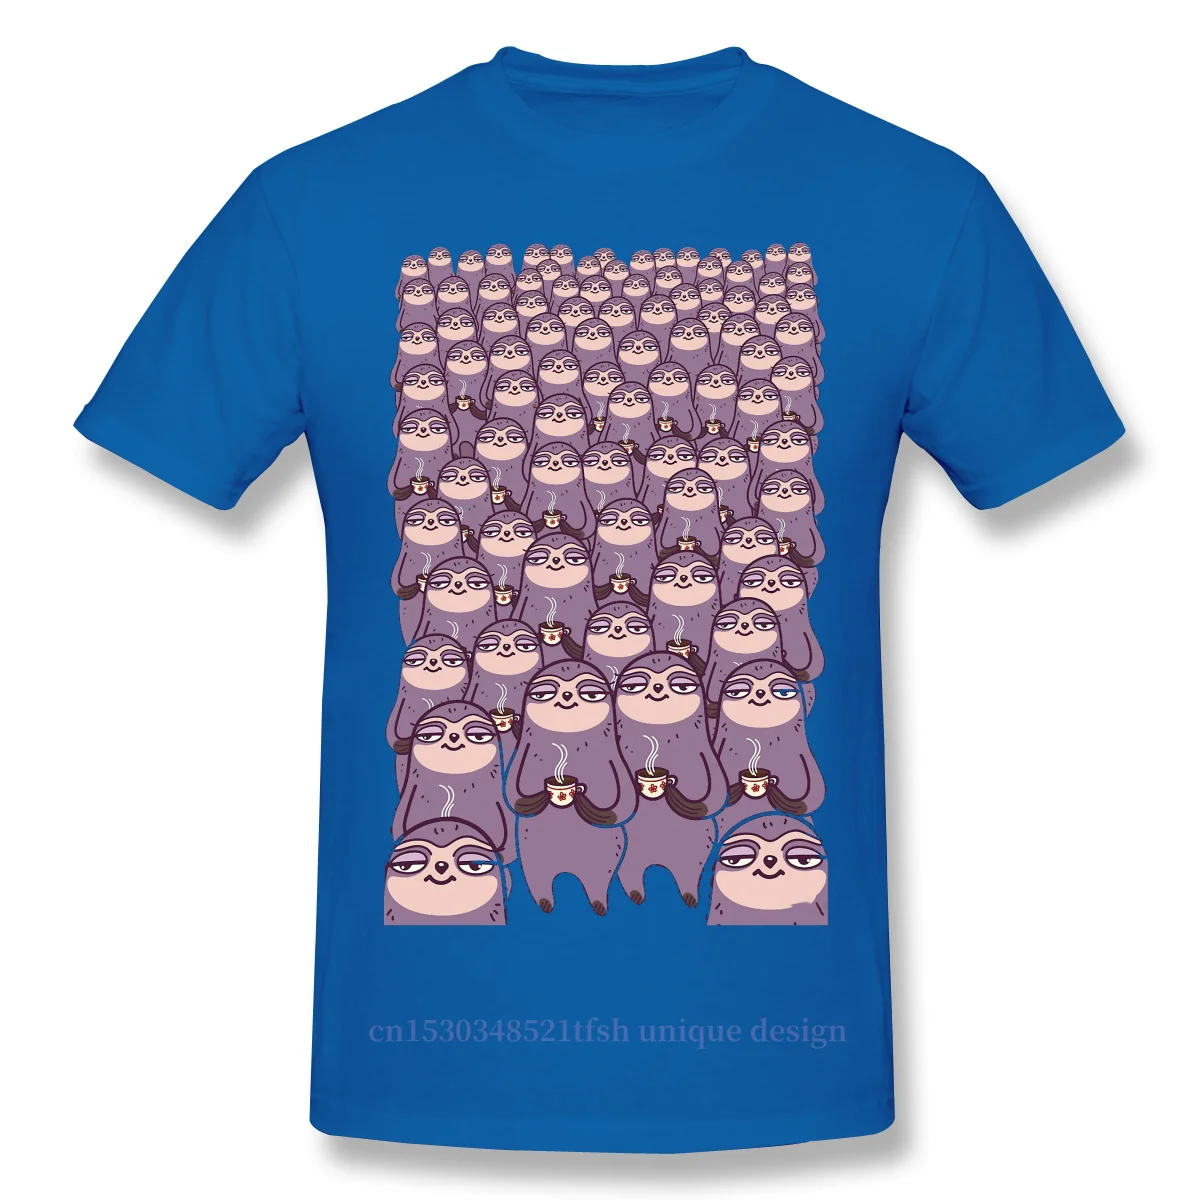 

Men Relax Funny Humor Fashion Internet Slang Black T-Shirt Sloth-tastic! TShirt Pure Cotton Tees Harajuku Shirt